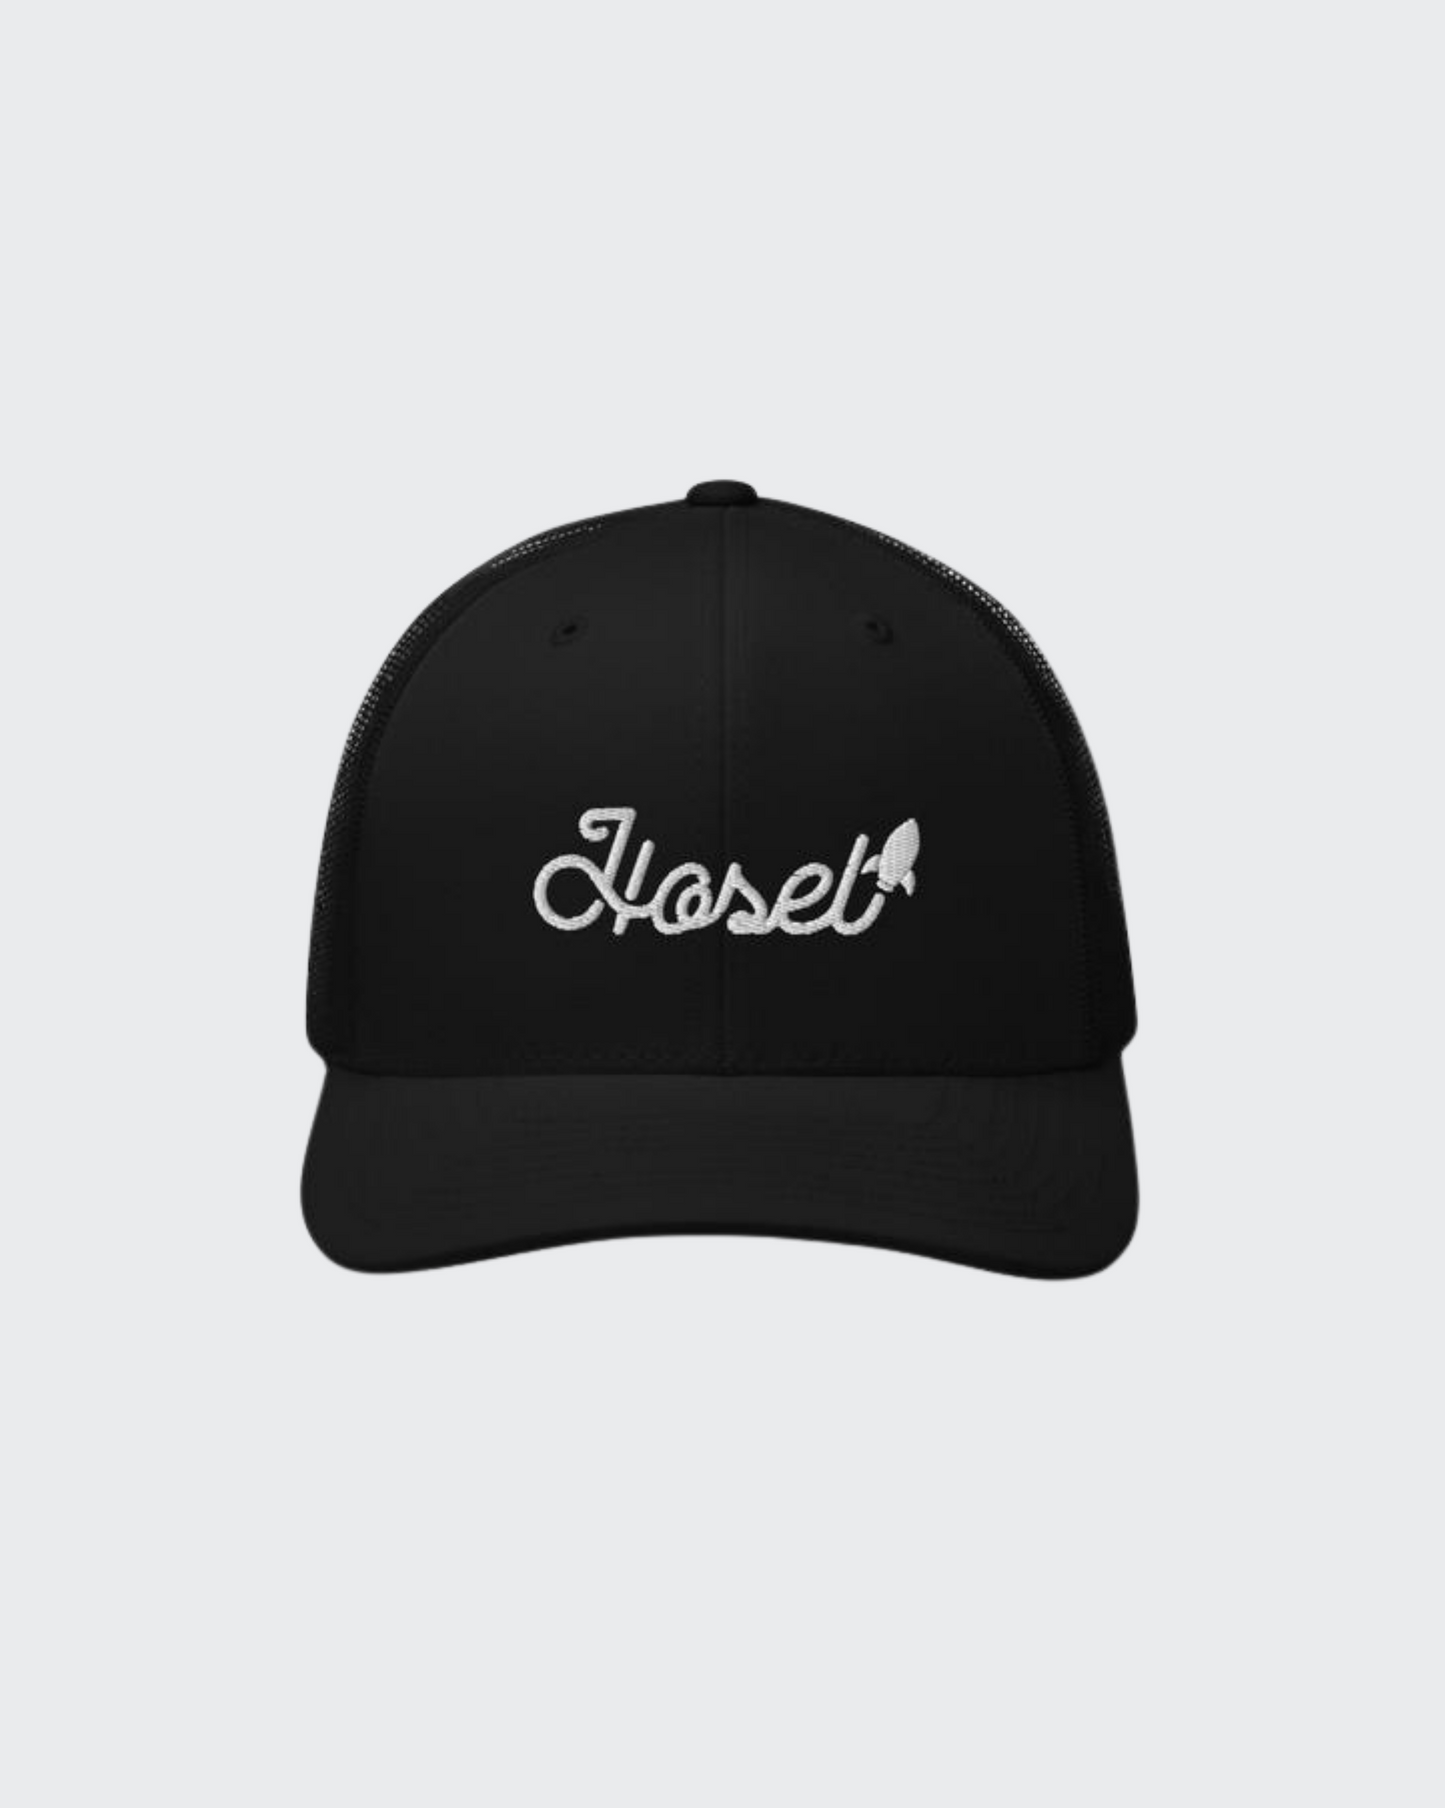 Hosel Rocket Mesh Back Hat